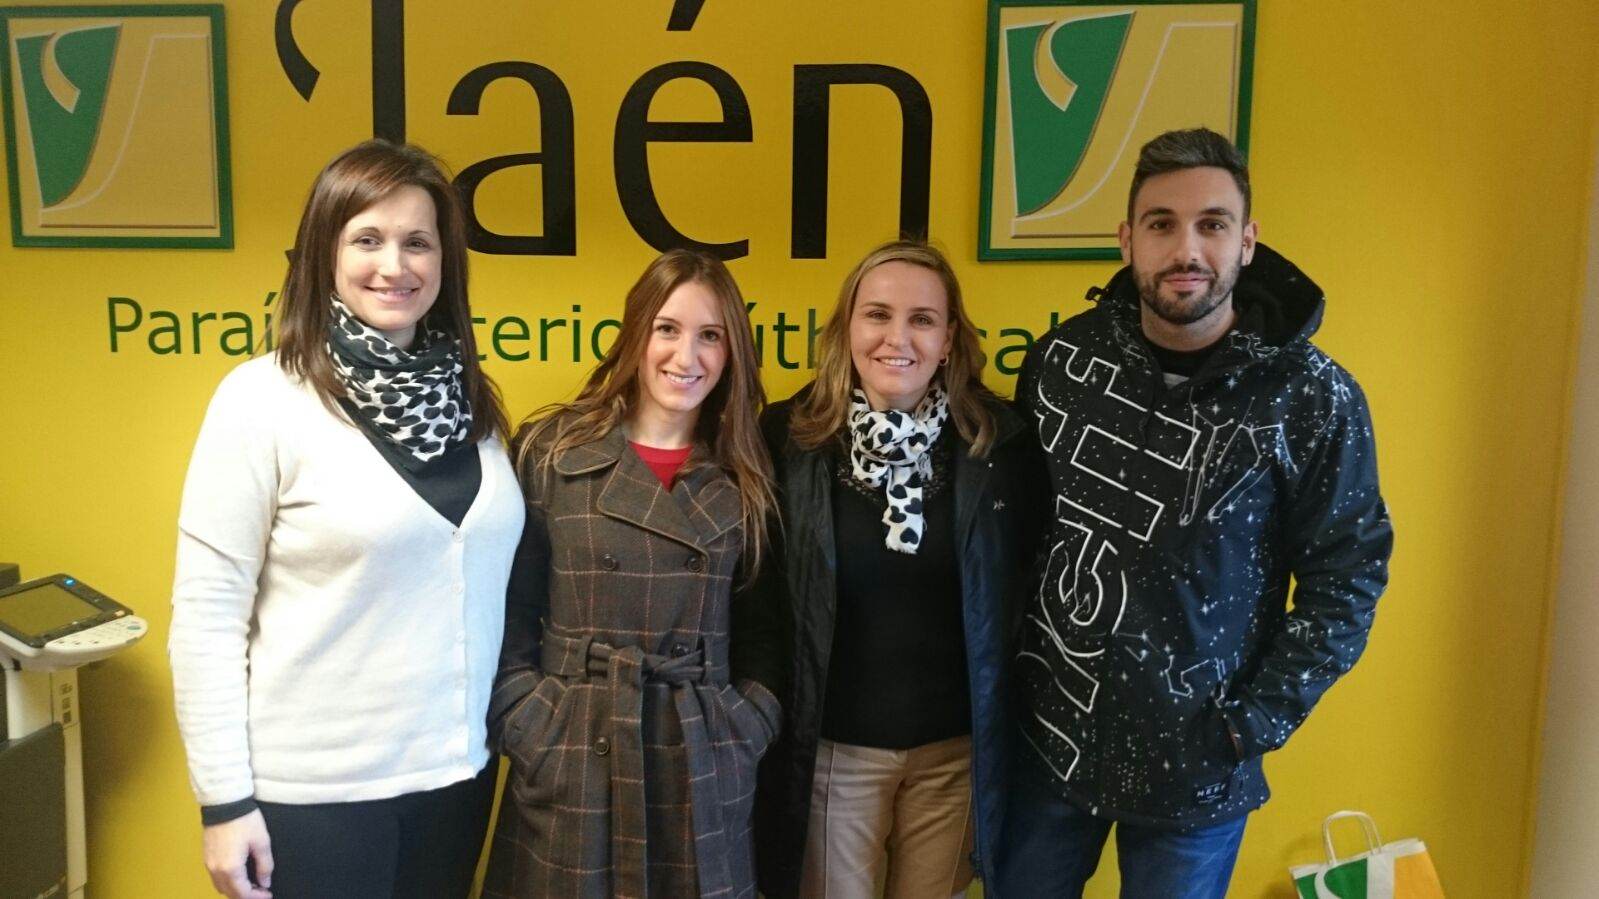 En la imagen, Mari Trini López, gerente del Jaén Paraíso Interior junto con Gemma Caparrós, María Teresa Díaz y Enrique Martínez